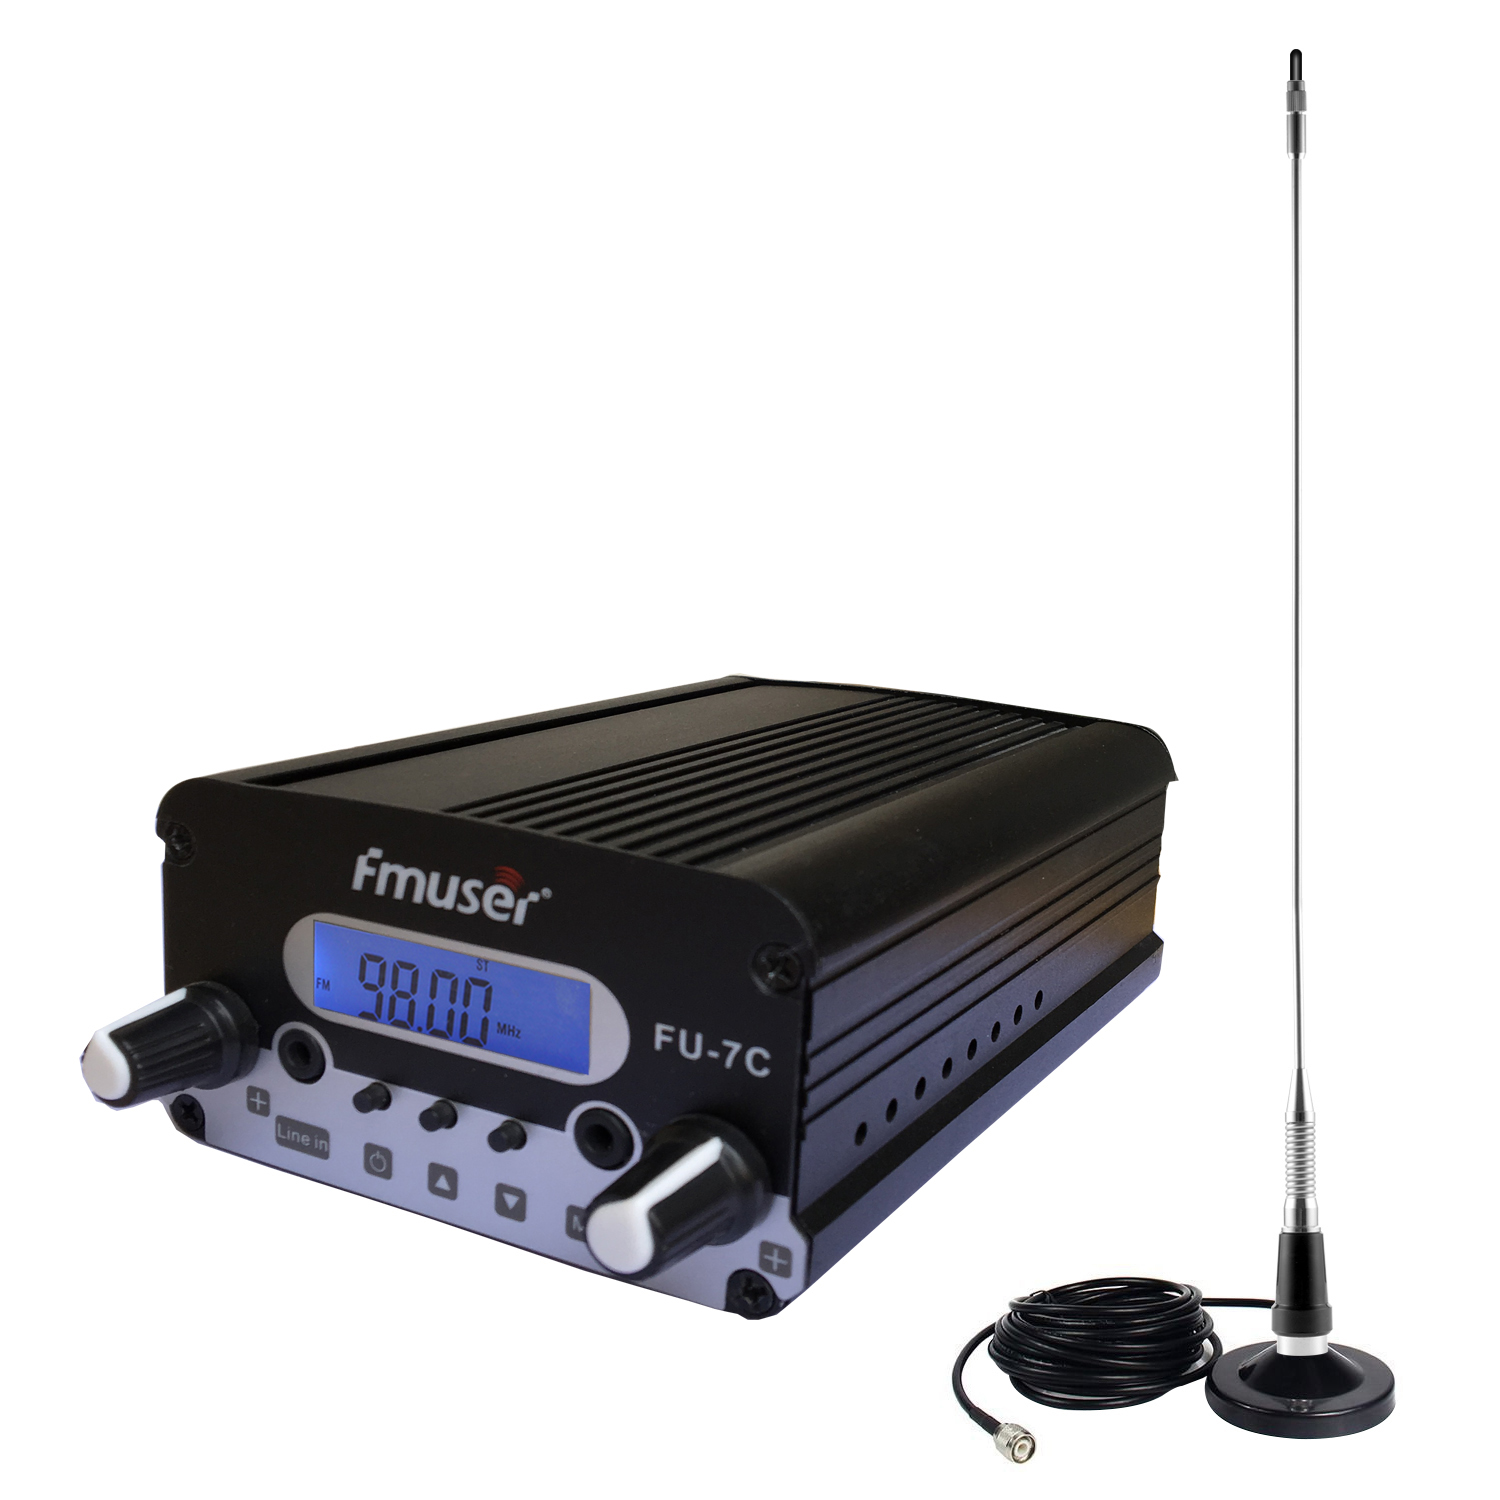 FMUSER 7W FM Transmitter Kit for Church Offers D